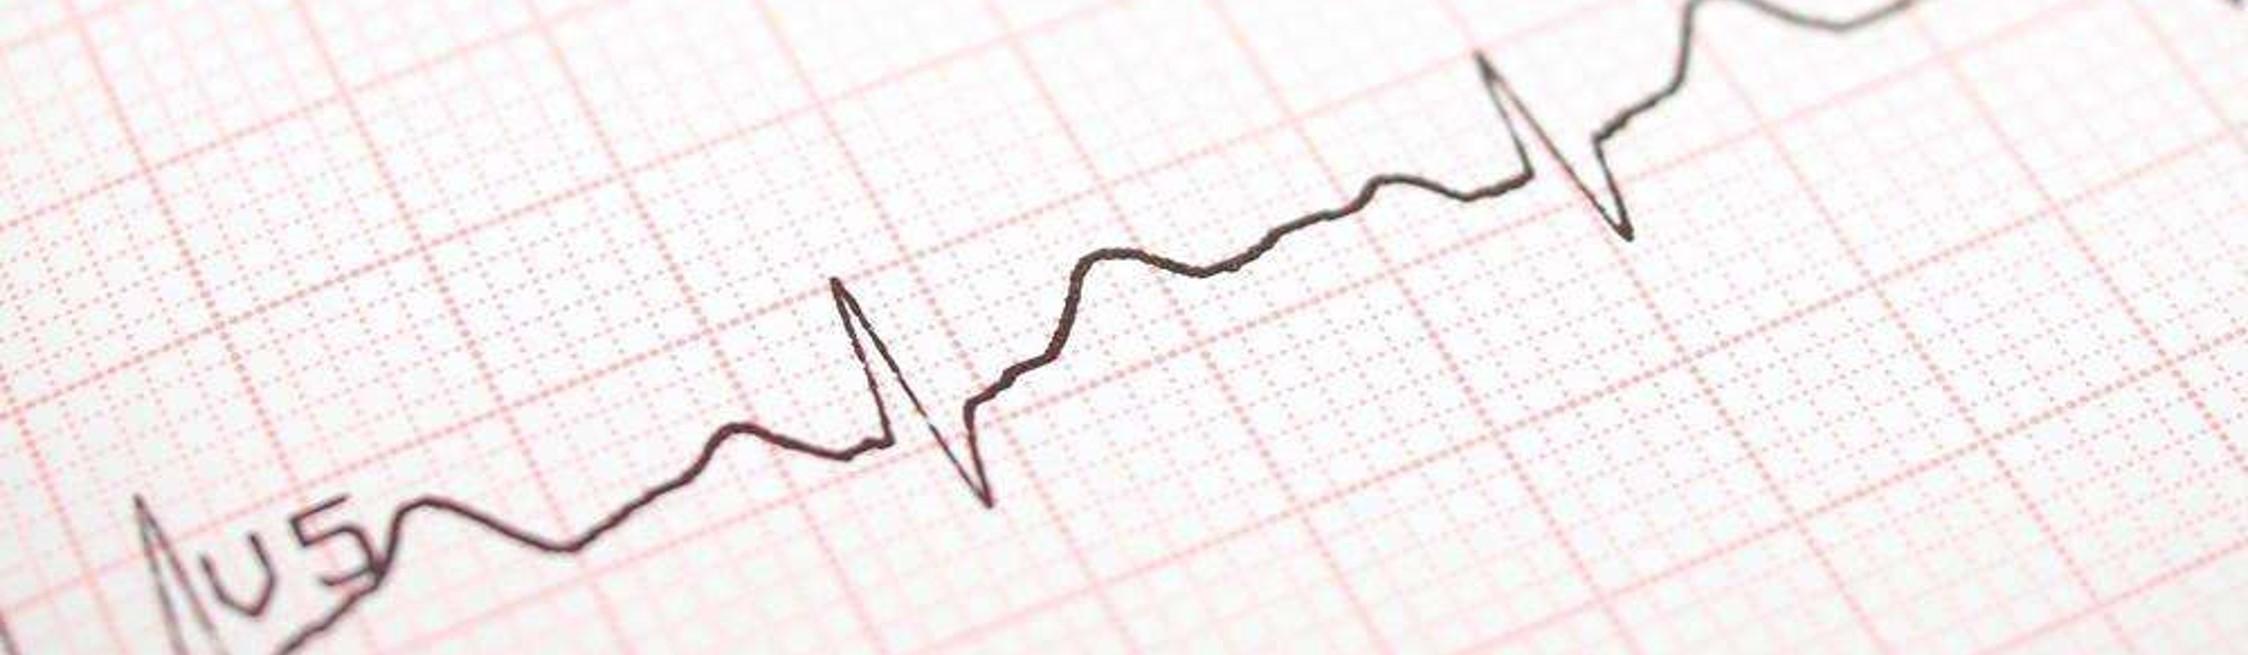 心电图ＱＲＳ波群电压的临床意义